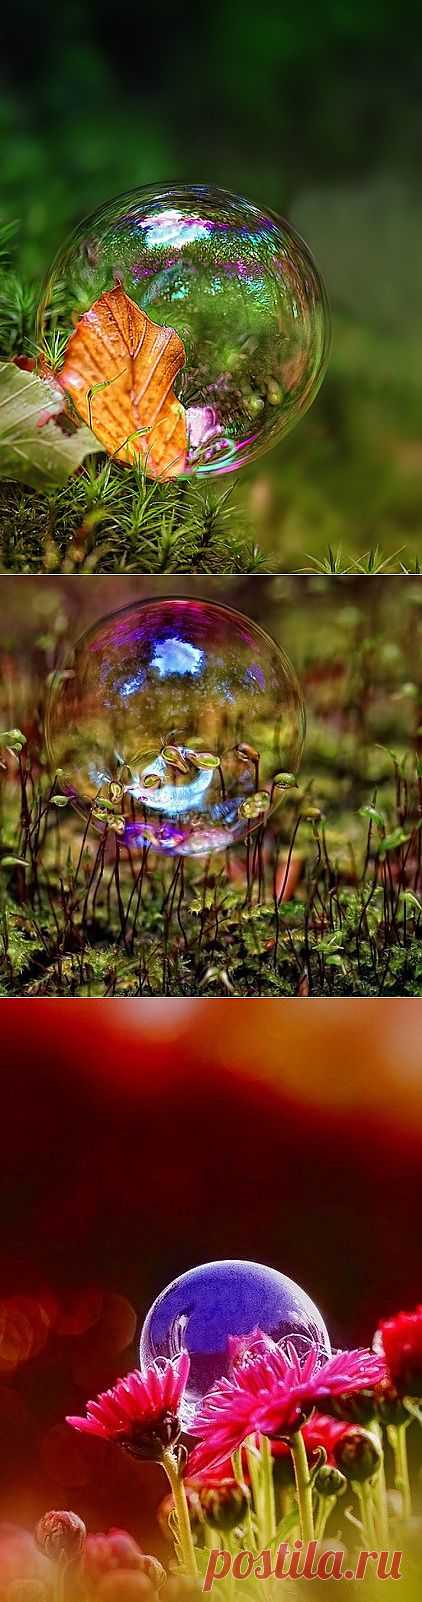 Мыльные пузыри от фотографа Kent Mathiesen.